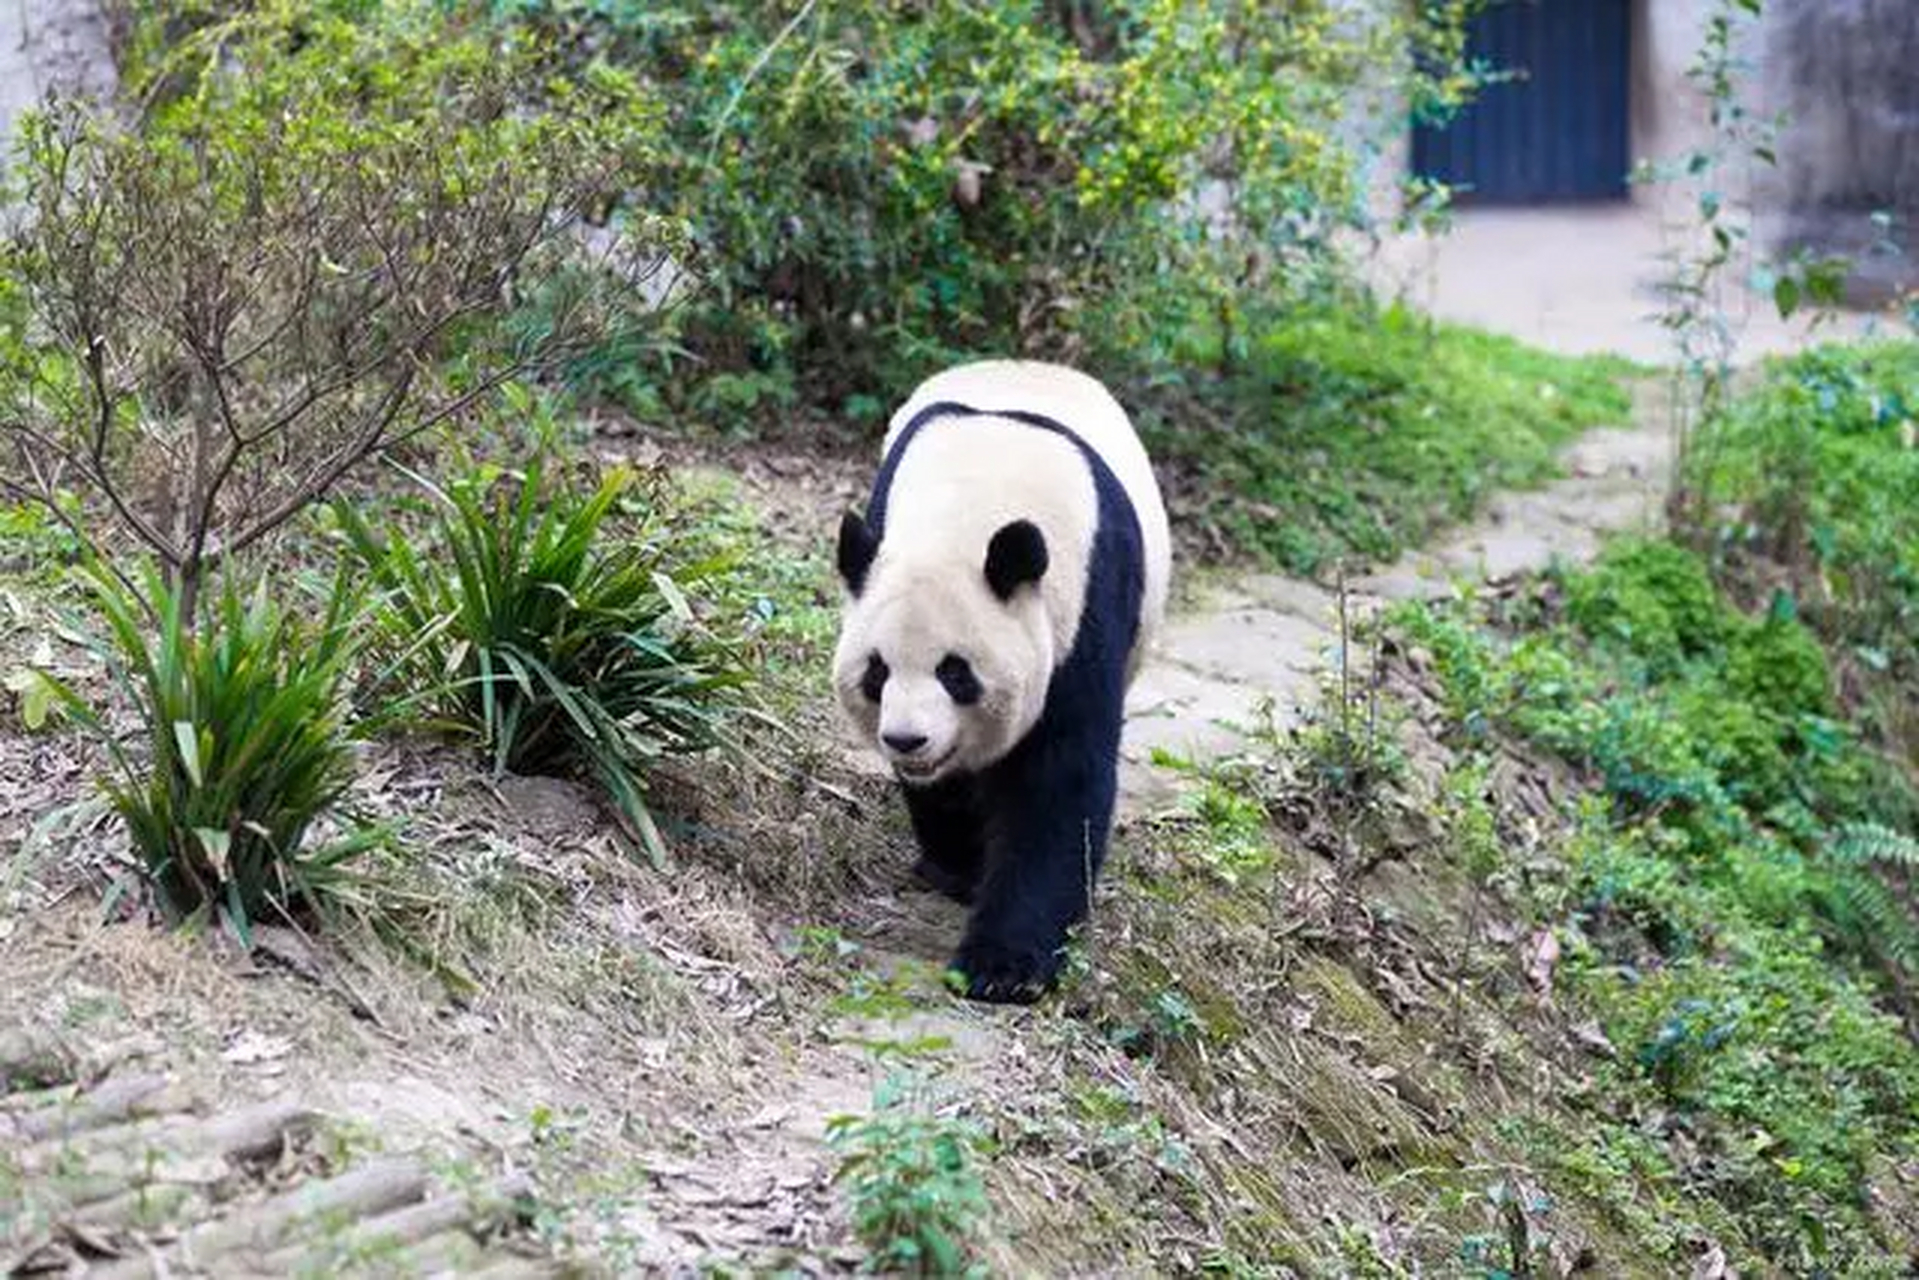 丫丫是国宝大熊猫的爱称, 2000年8月3日出生在北京动物园,2003年4月尚